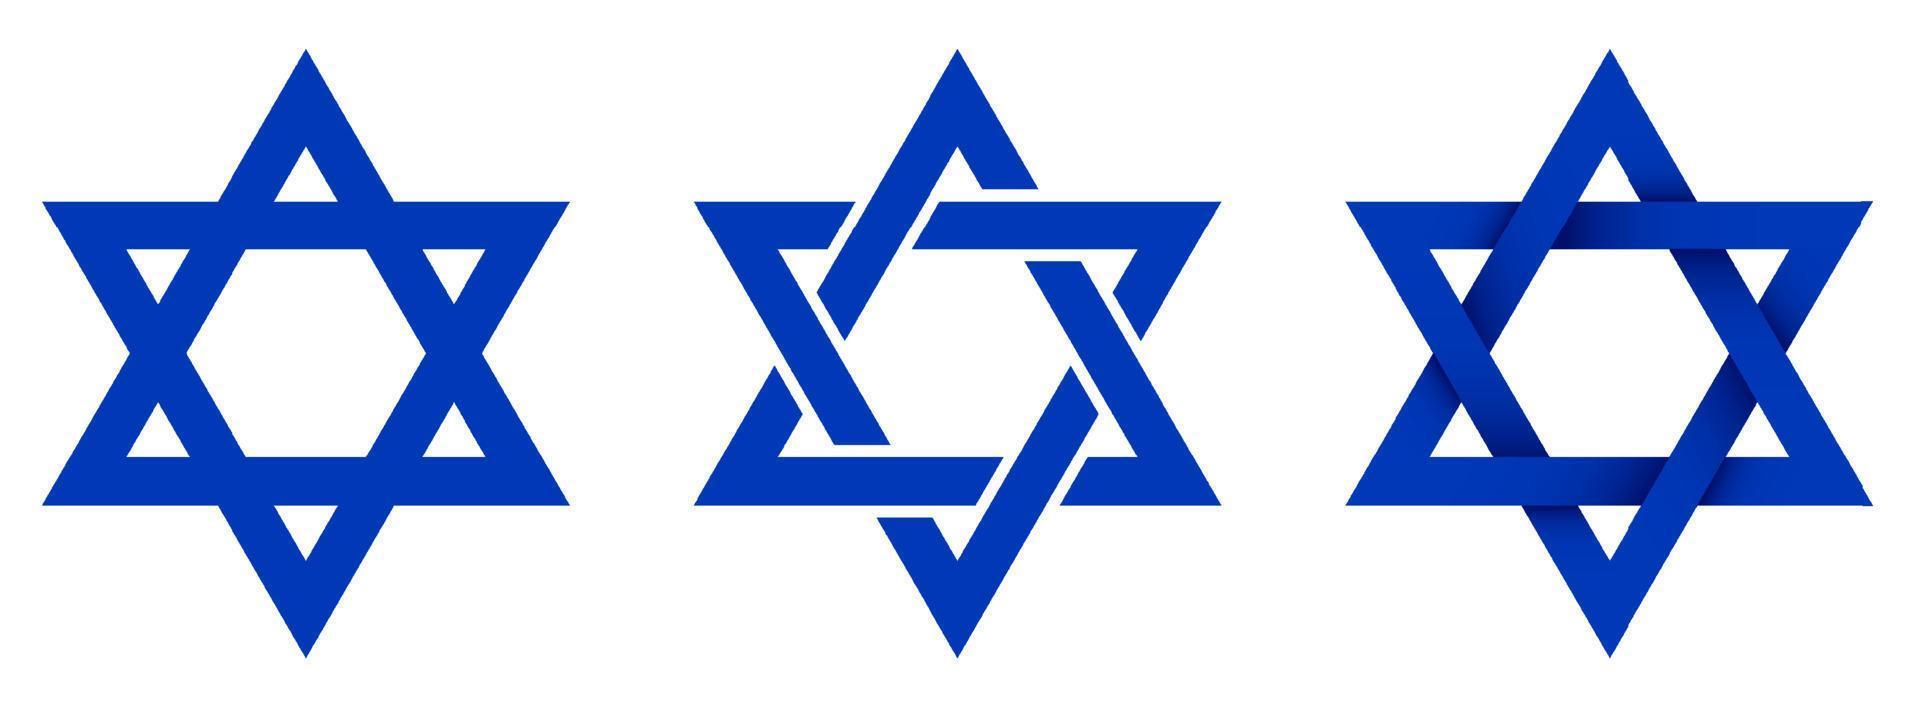 symbole de l'étoile de david. étoile hexagonale du drapeau national d'israël. vecteur